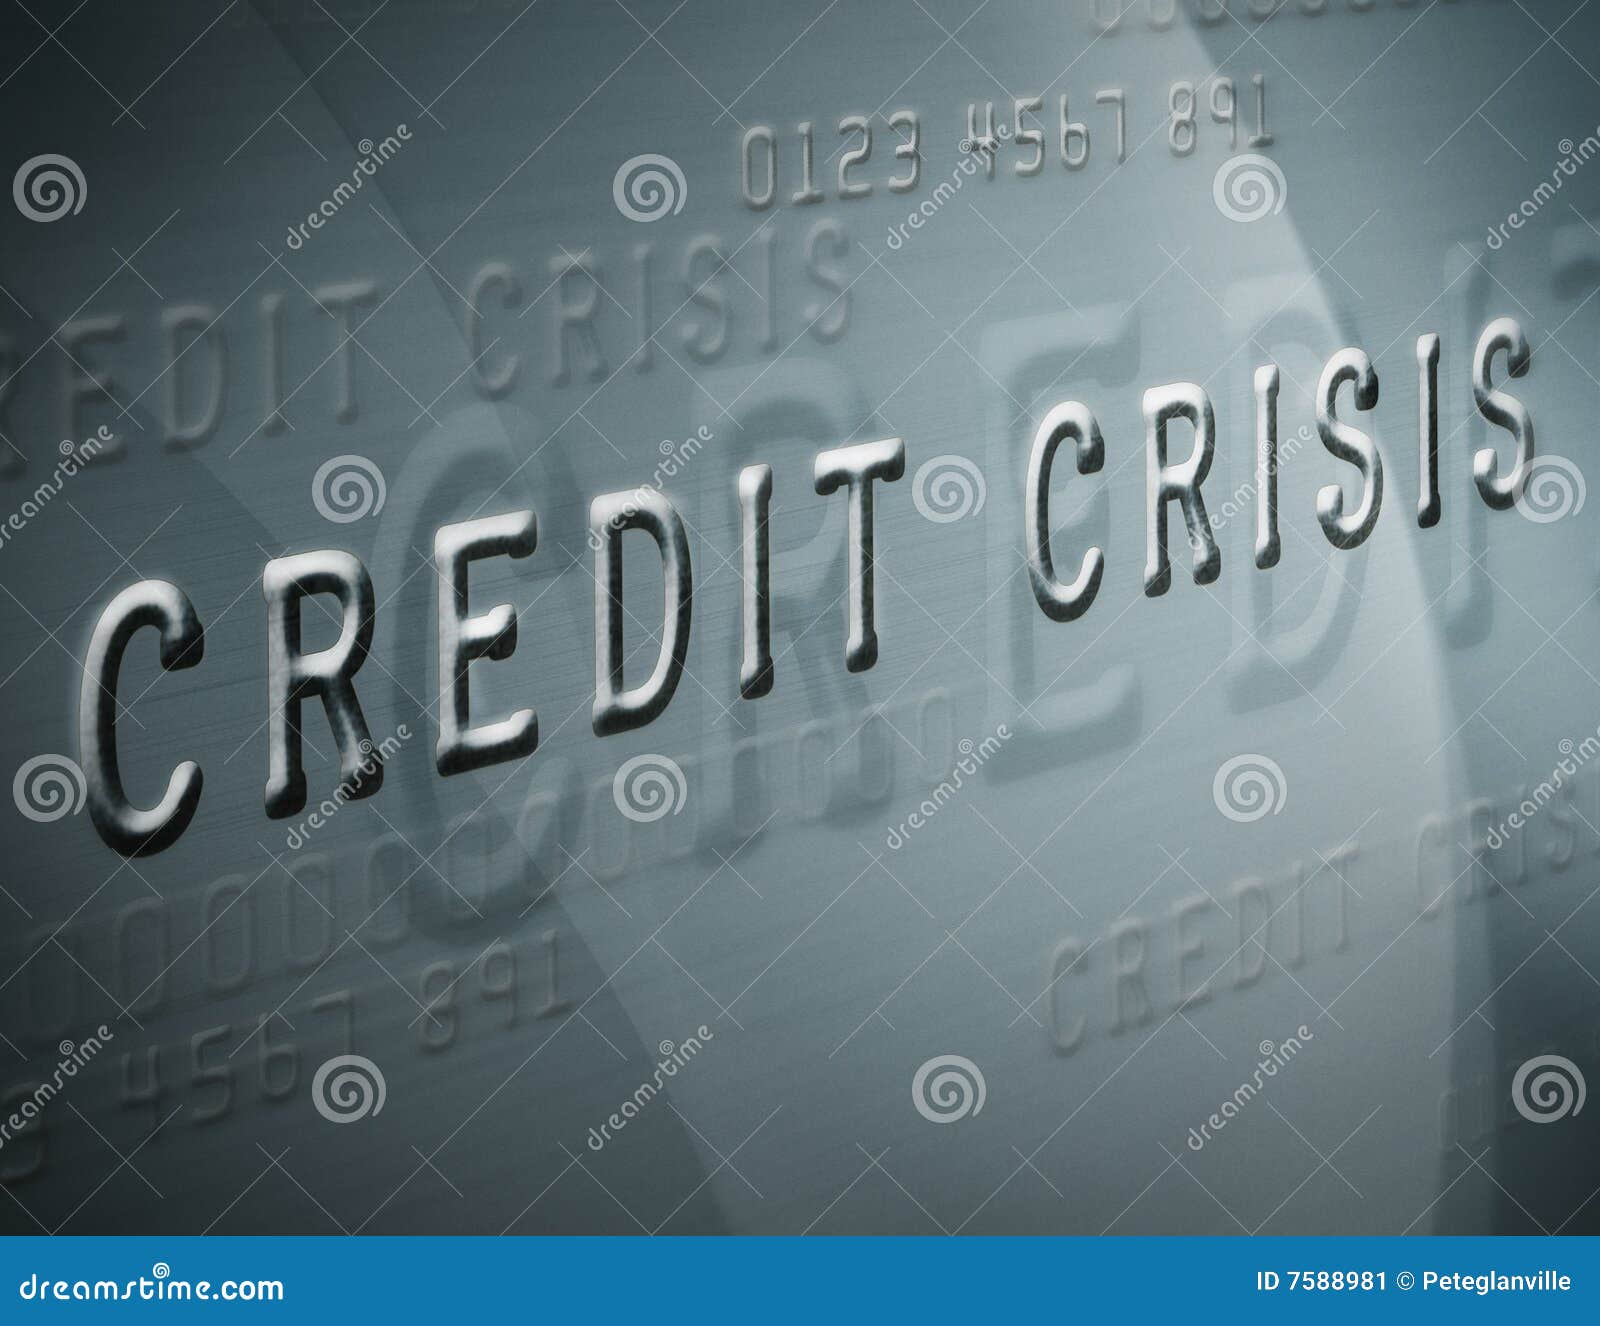 credit crisis